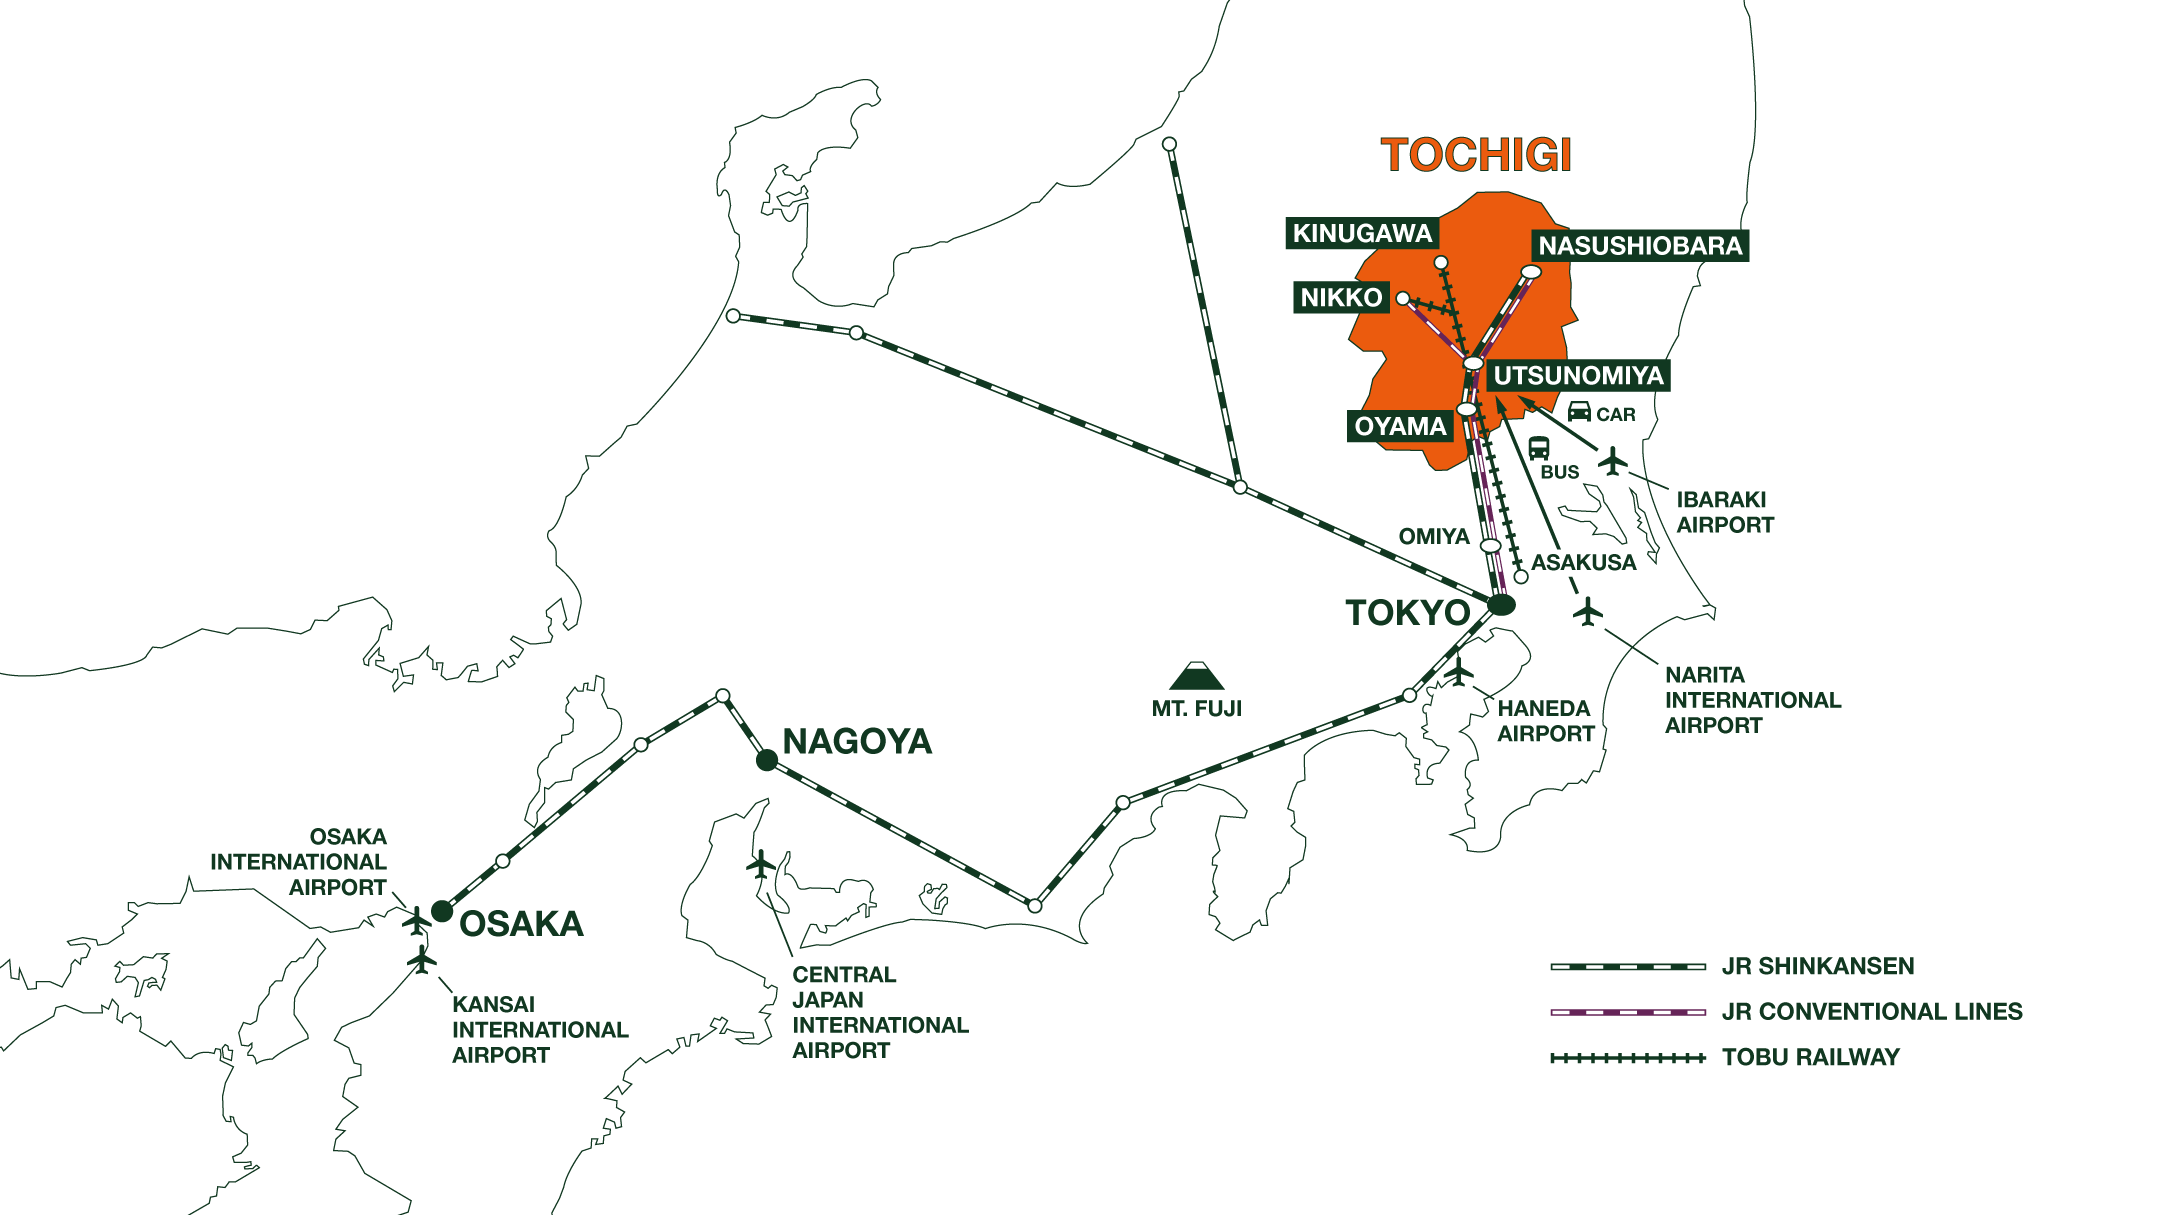 How to get to Tochigi